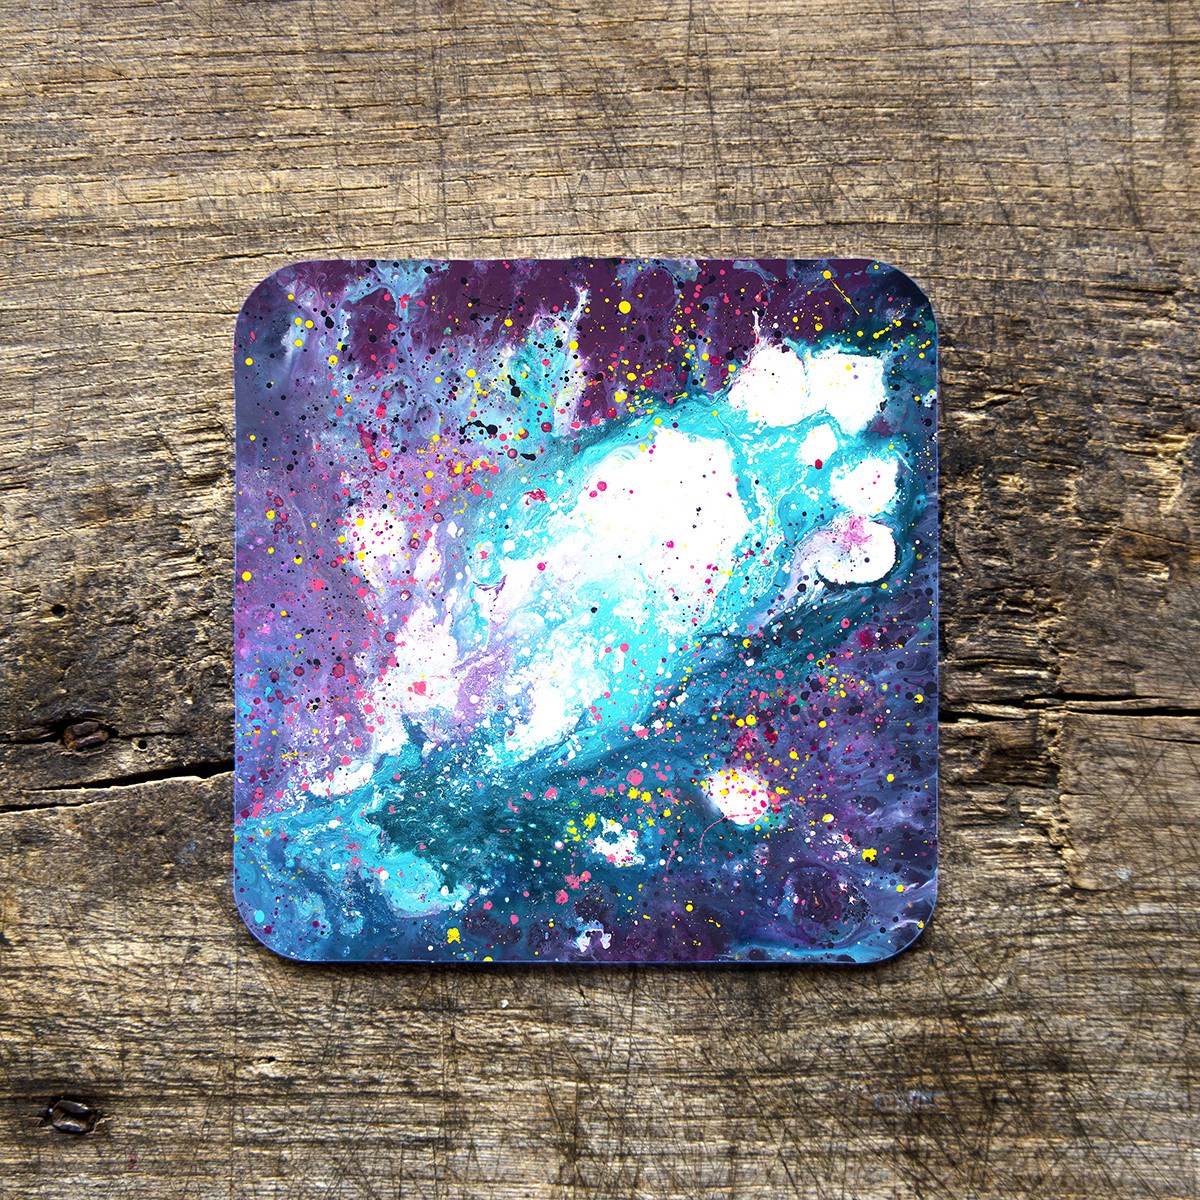 Stardust Coasterss - Louise Mead